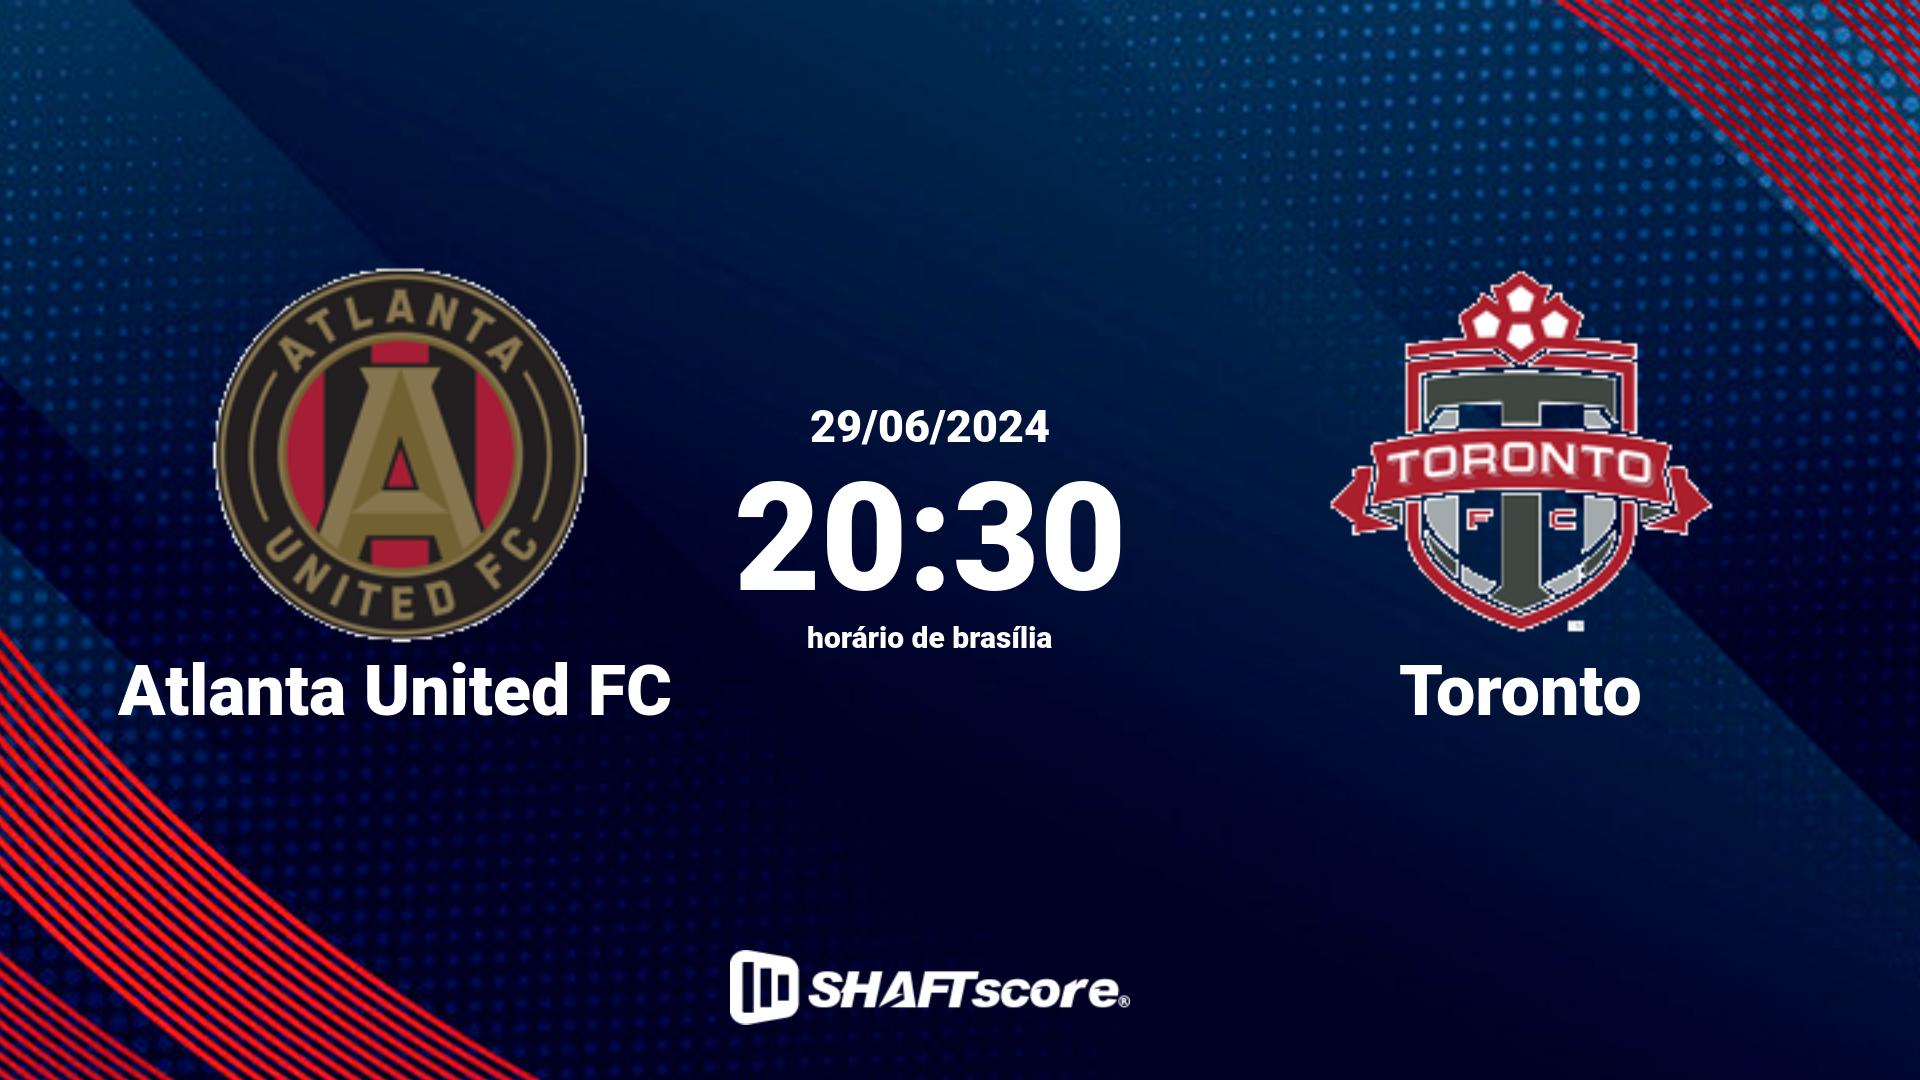 Estatísticas do jogo Atlanta United FC vs Toronto 29.06 20:30